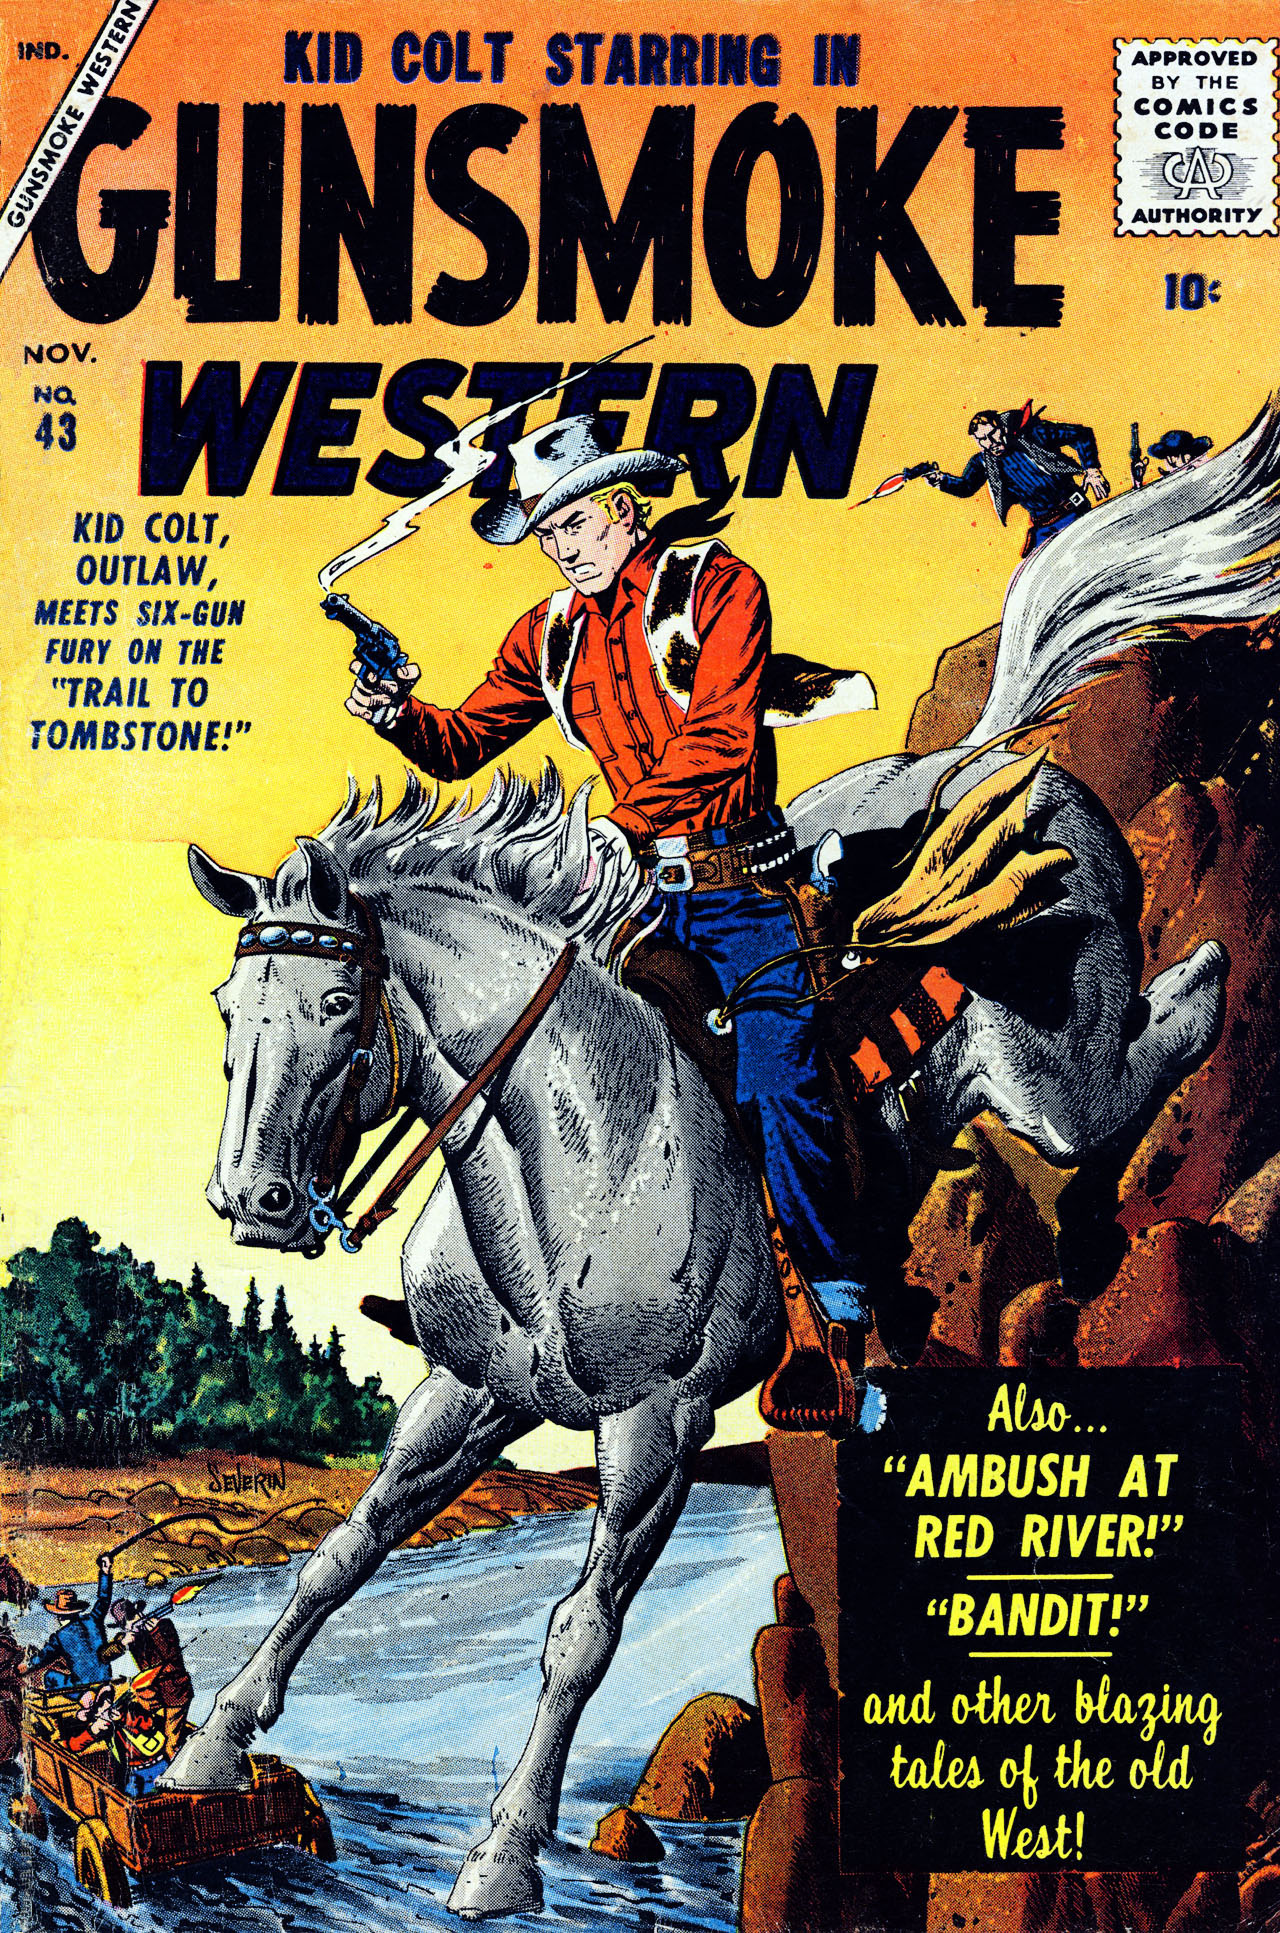 Read online Gunsmoke Western comic -  Issue #43 - 1